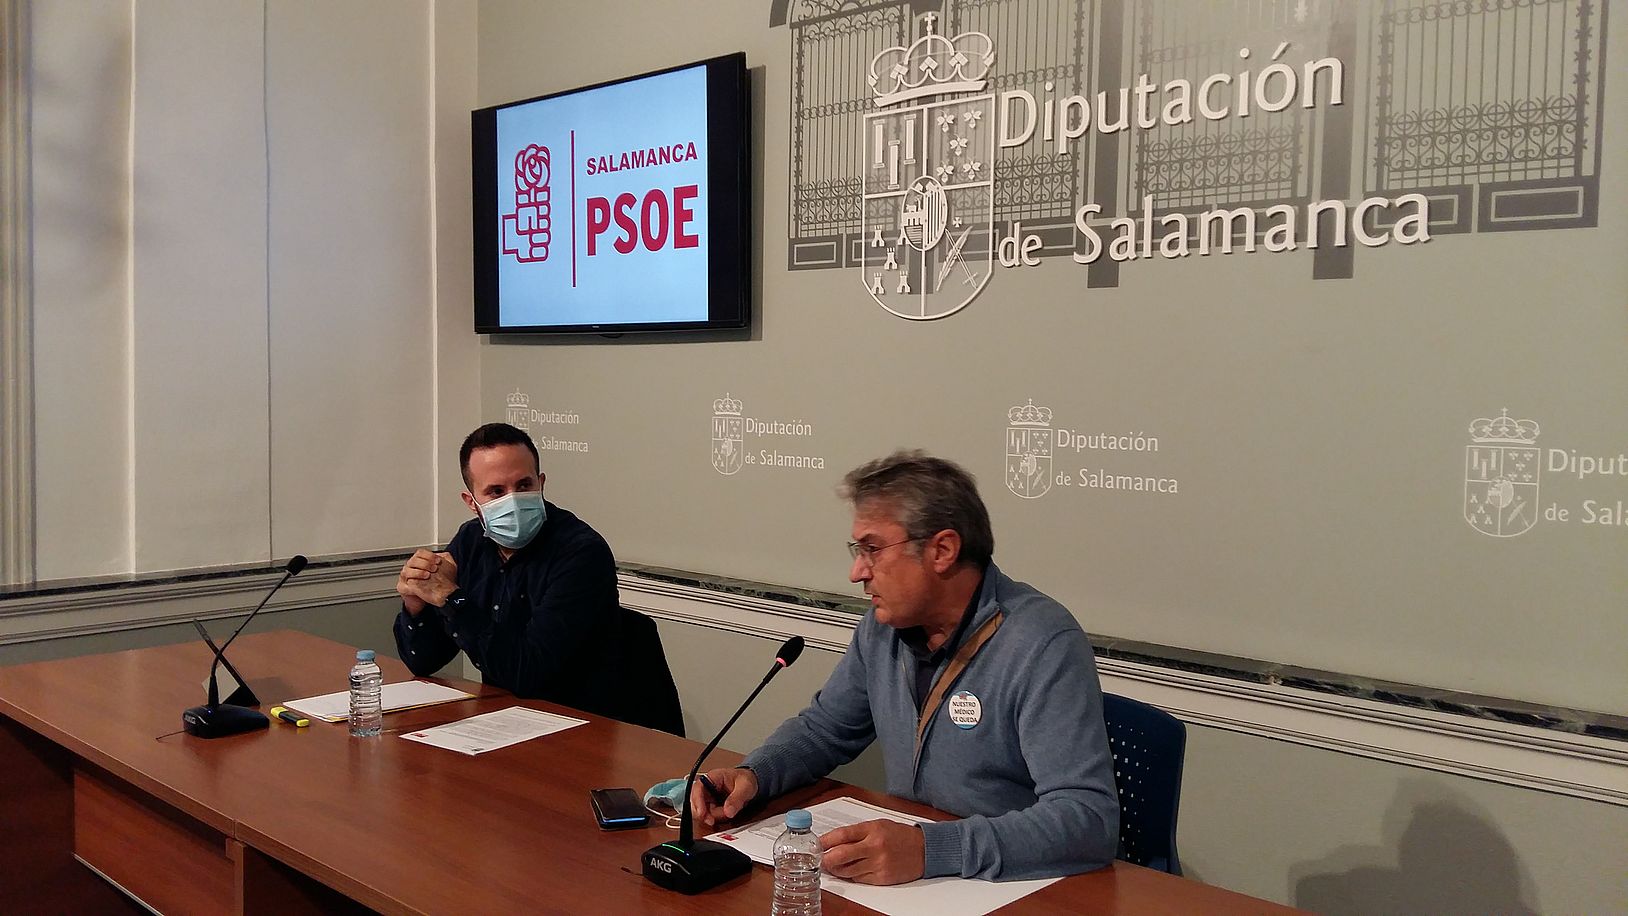 PSOE Diputacion Mociones Nov21. 2o